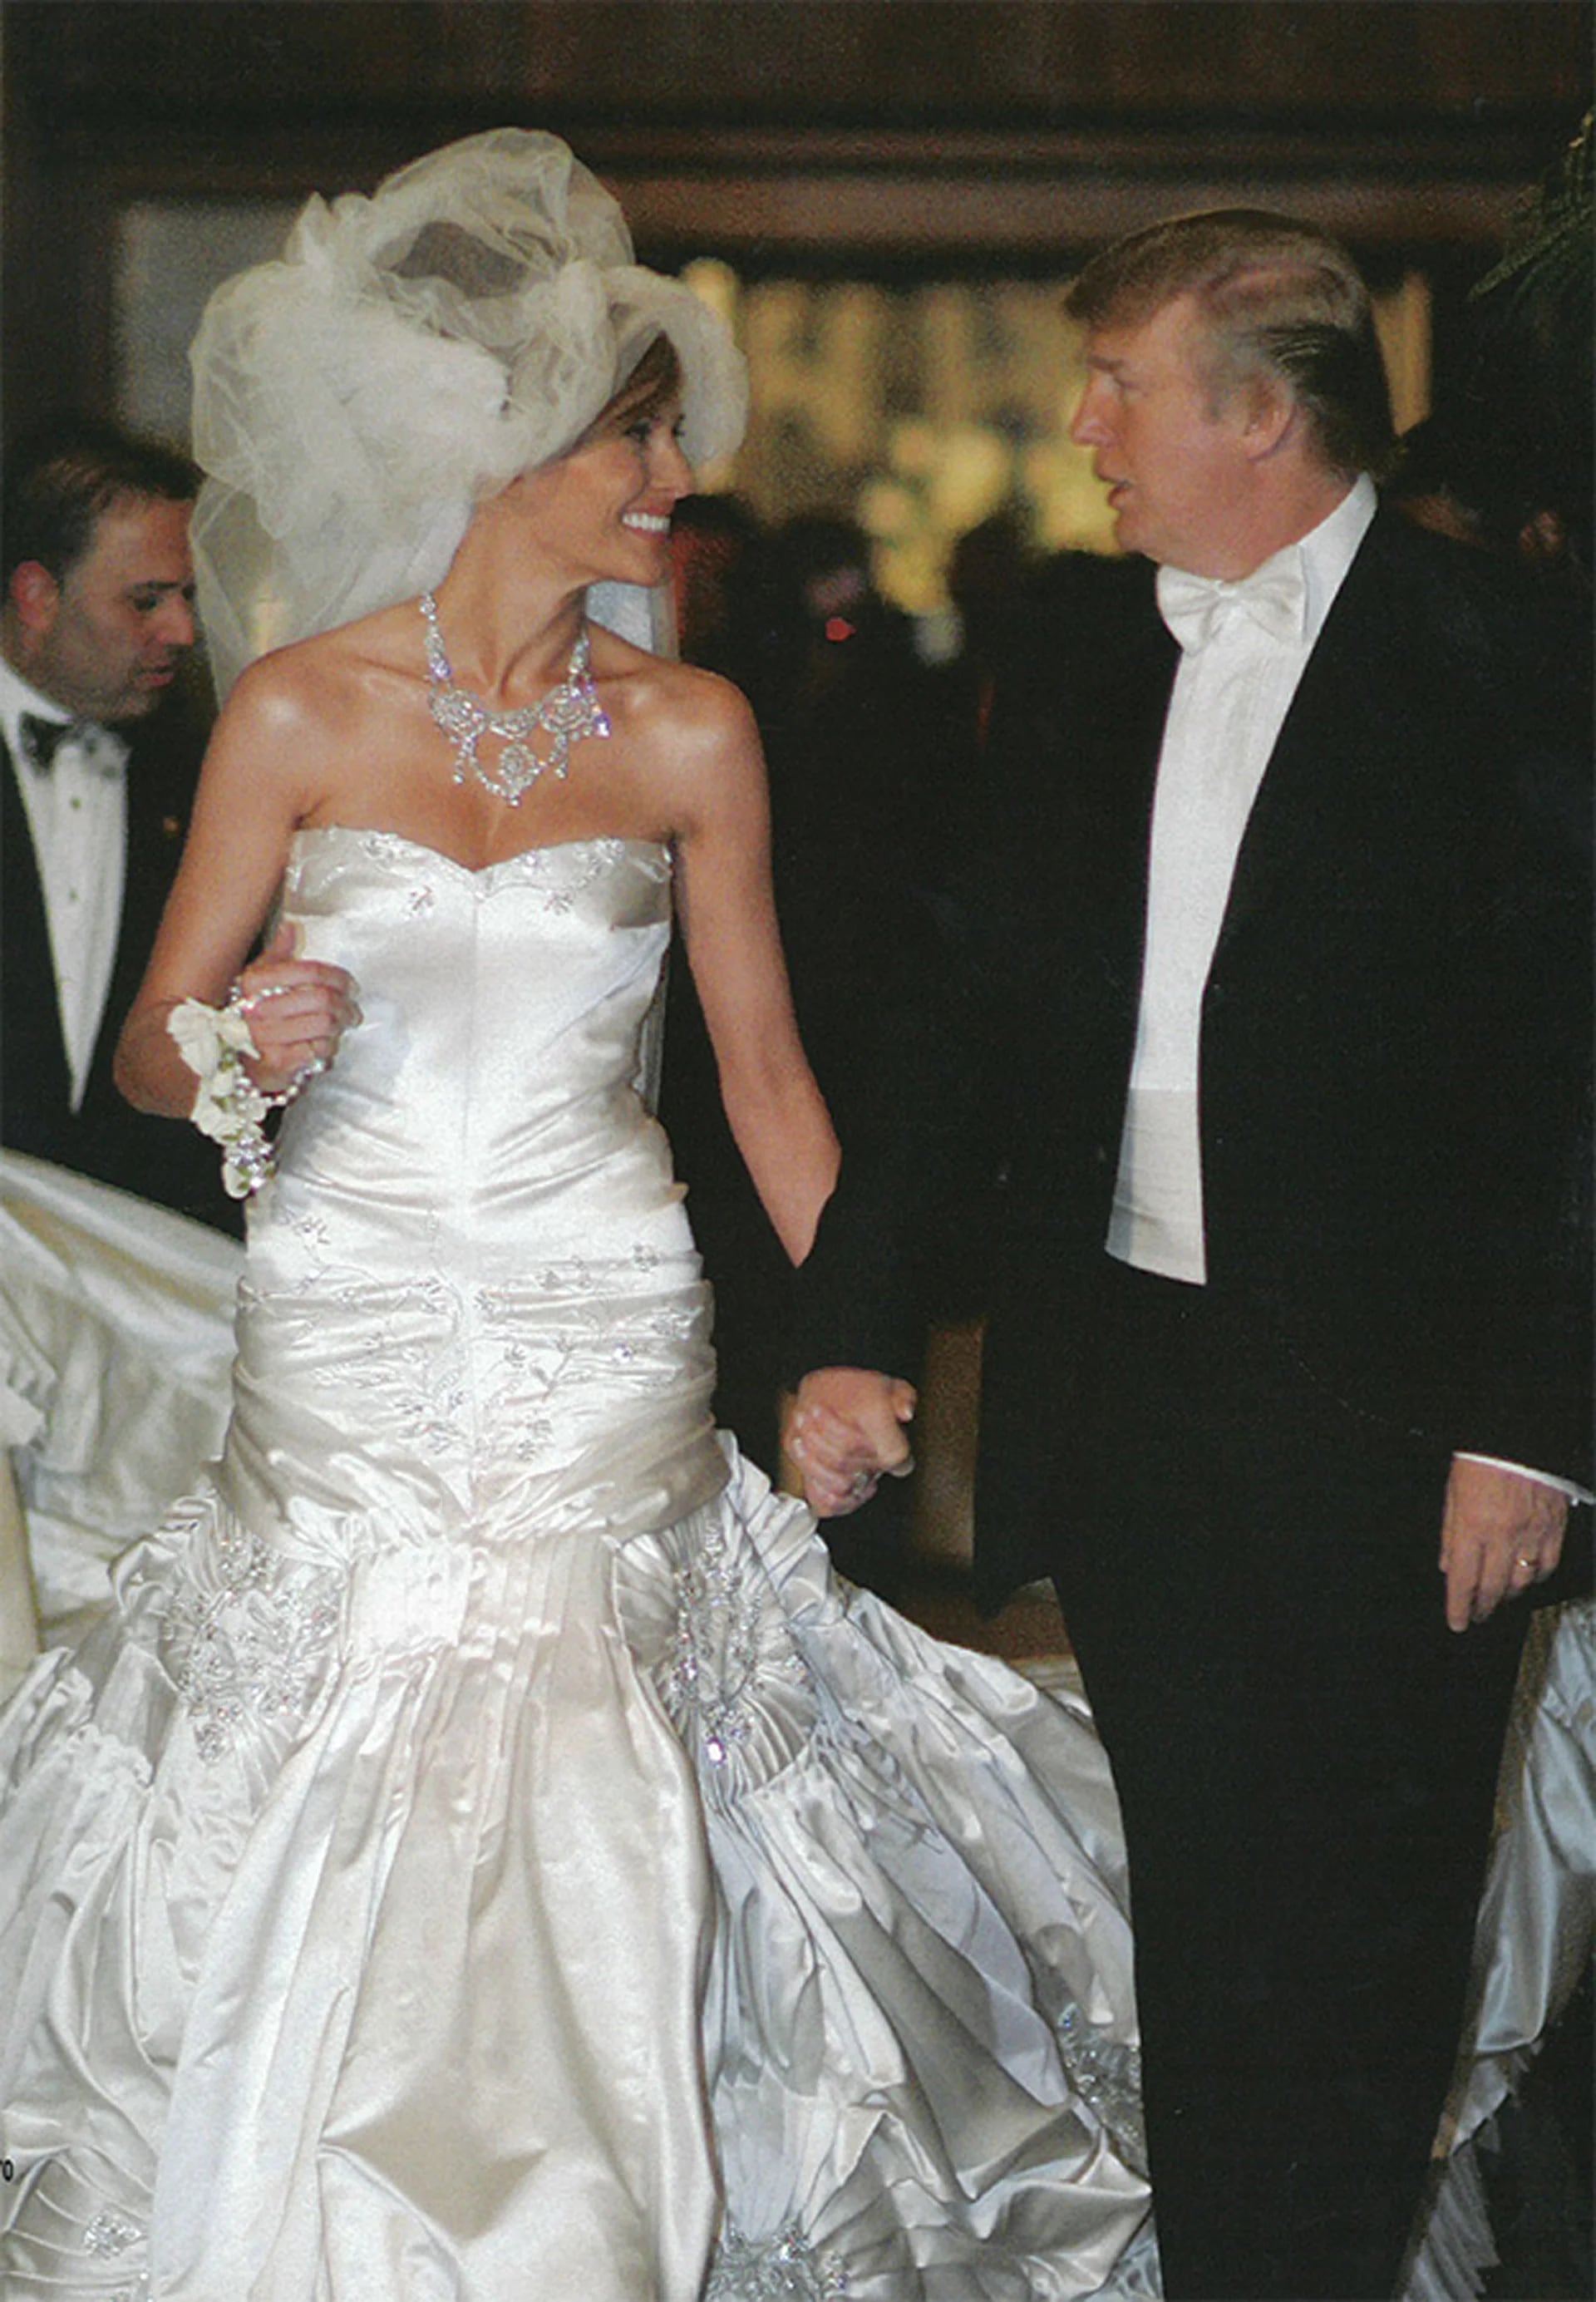 La boda de Donald Trump y Melania en 2005